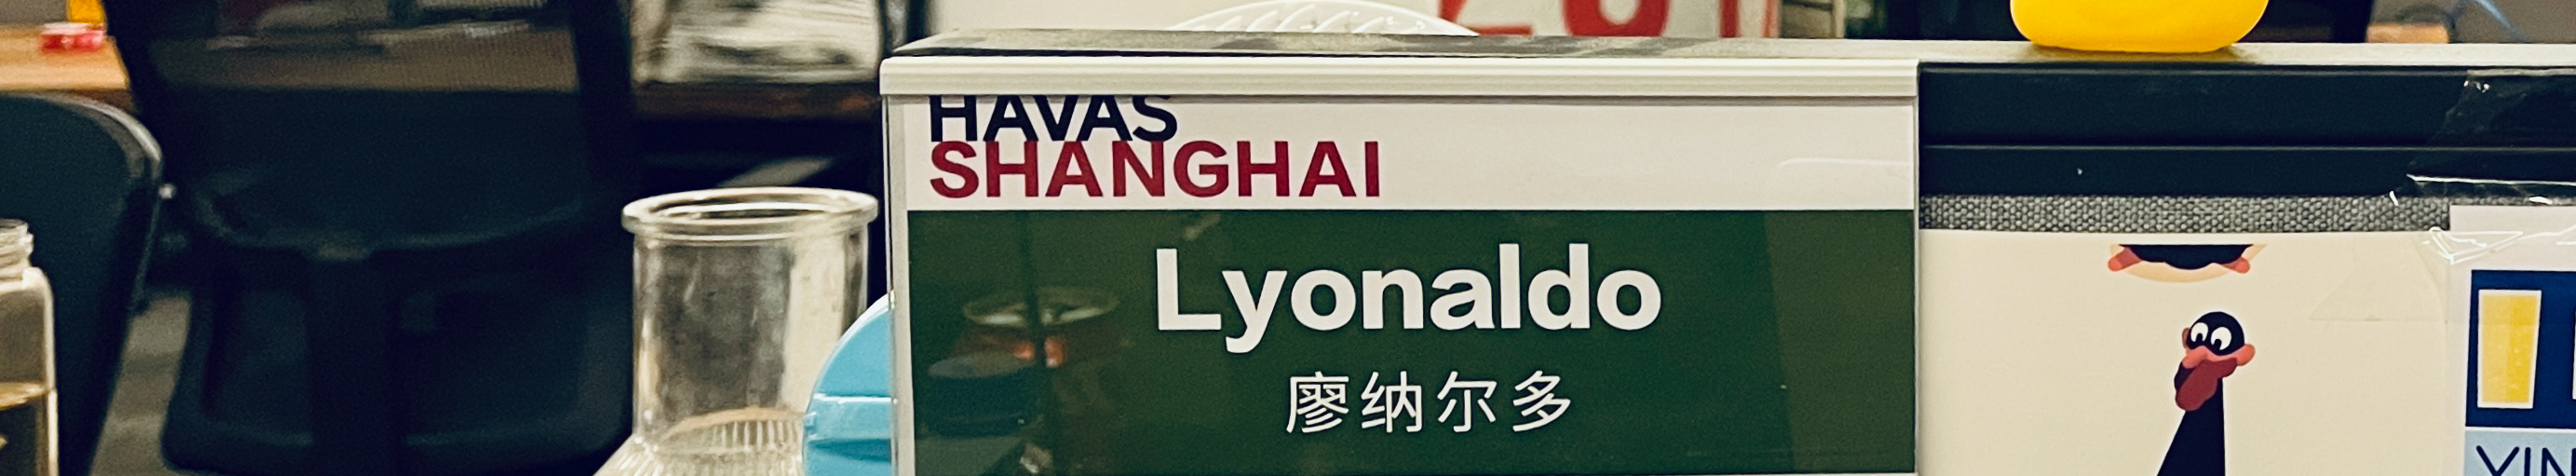 Lyon Liao 的個人檔案橫幅